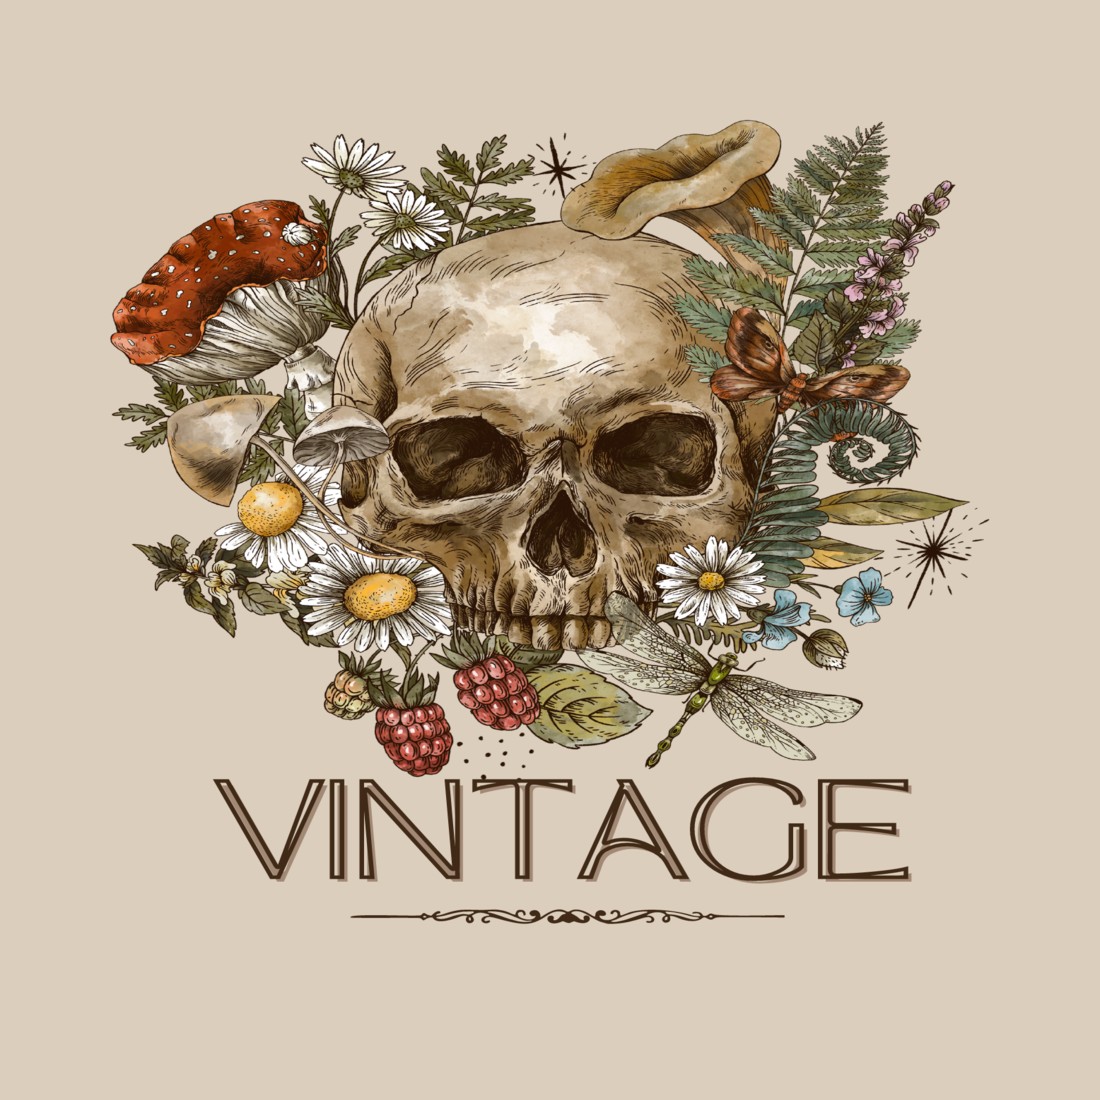 Vintage T-Shirt Designs Bundle Retro Collection cover image.